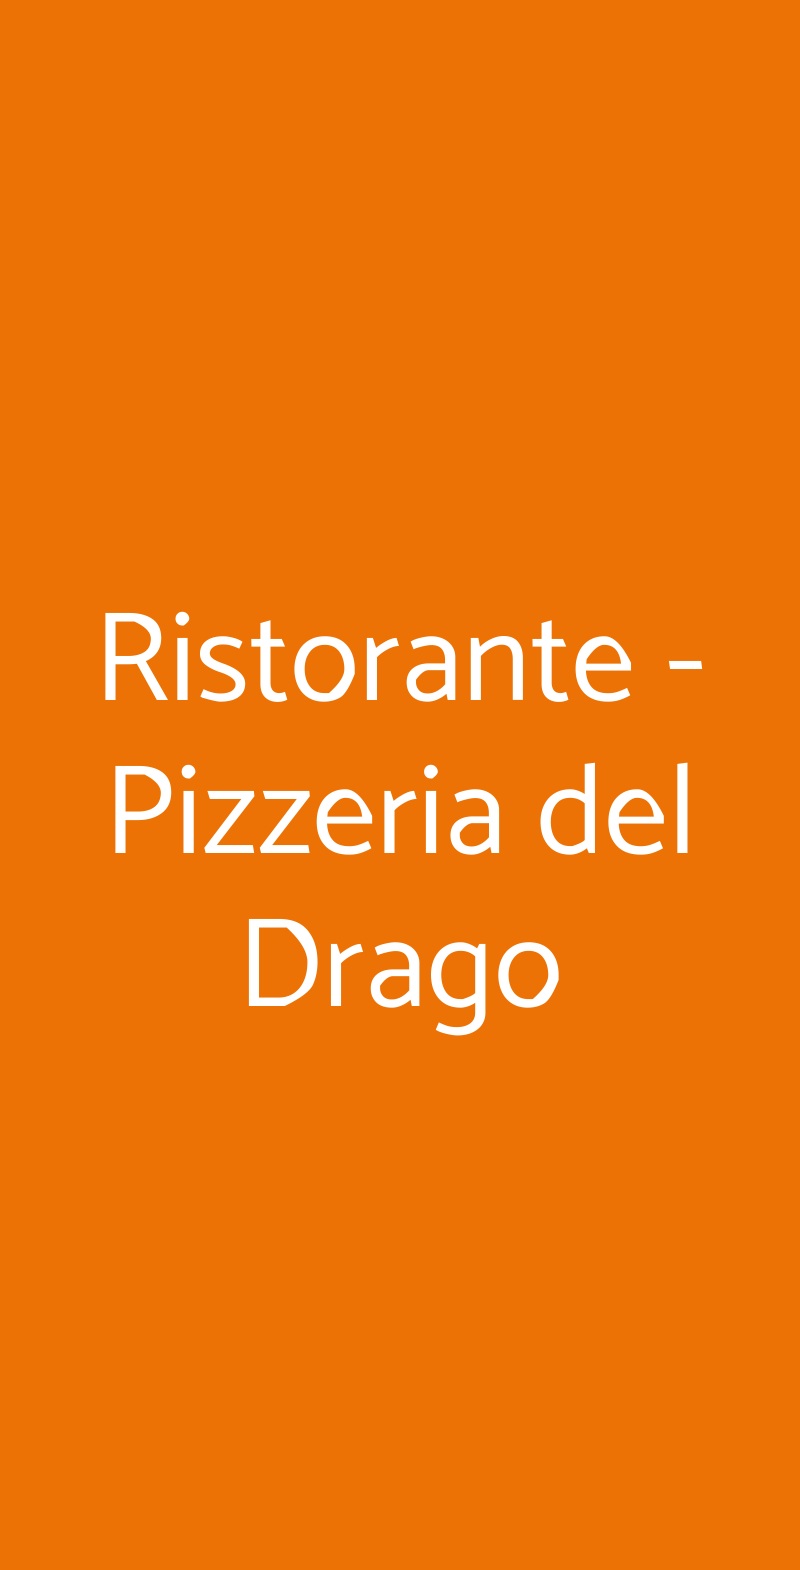 Ristorante - Pizzeria del Drago Milano menù 1 pagina